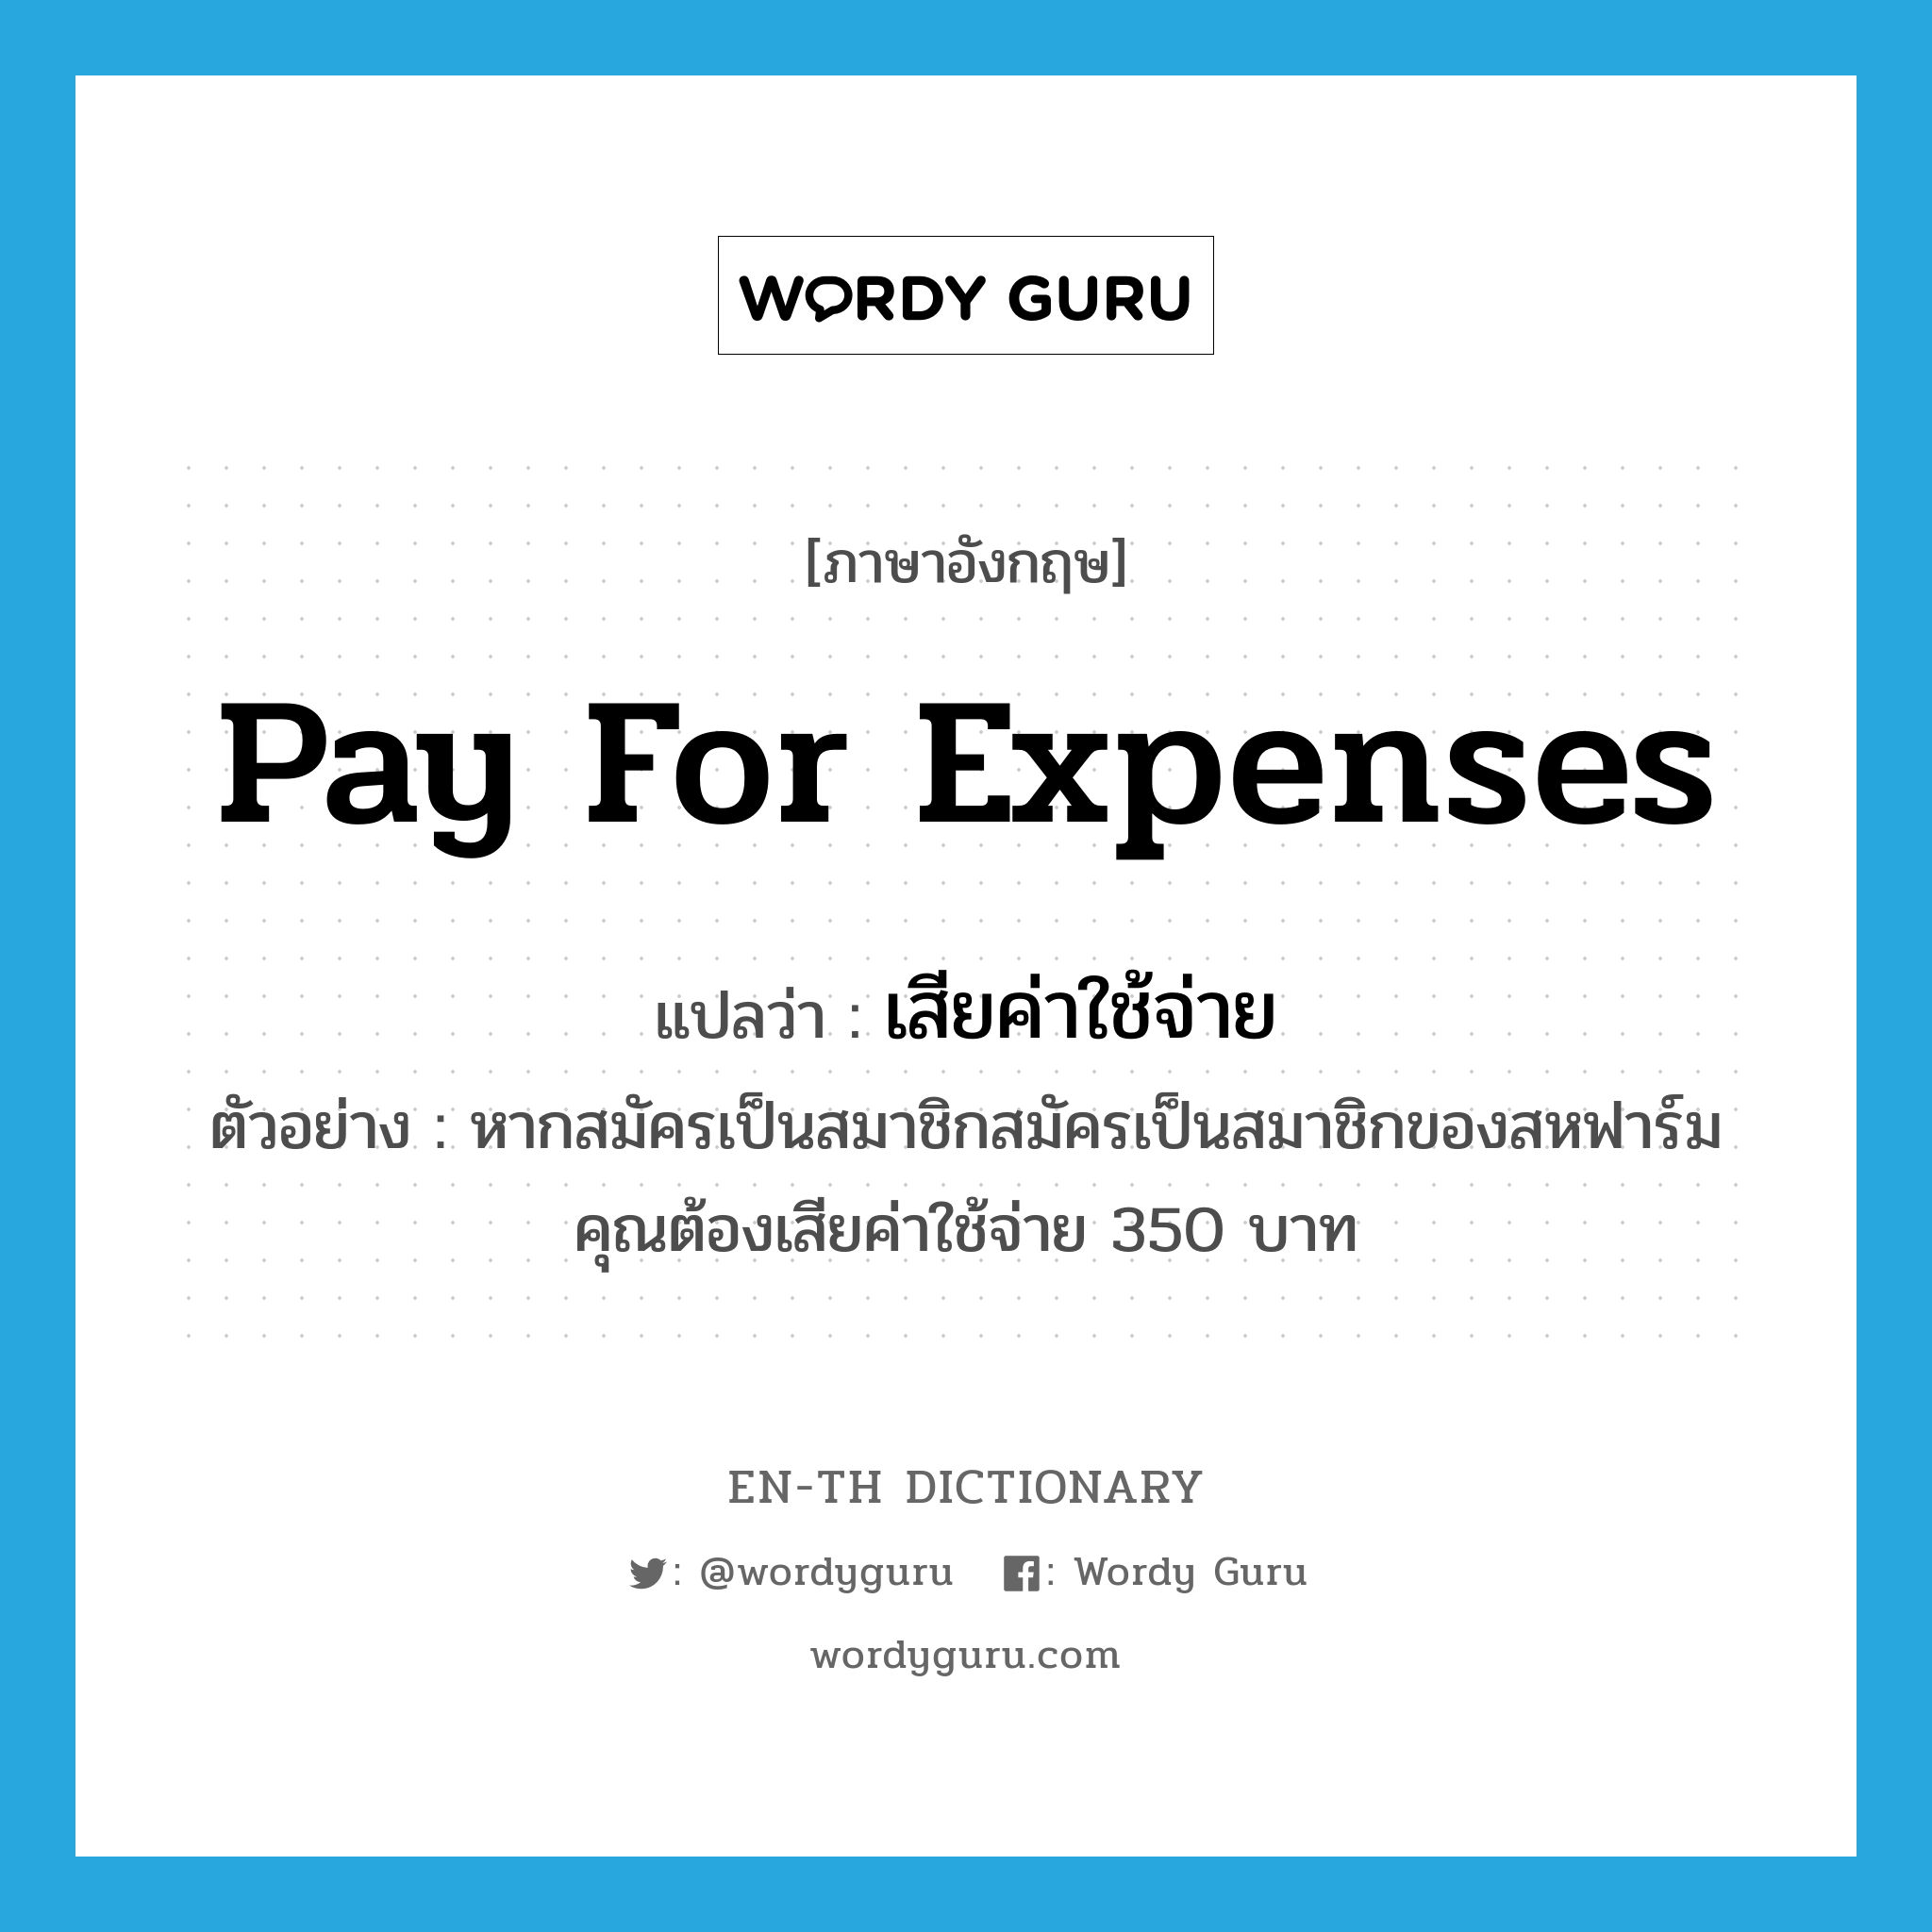 pay for expenses แปลว่า?, คำศัพท์ภาษาอังกฤษ pay for expenses แปลว่า เสียค่าใช้จ่าย ประเภท V ตัวอย่าง หากสมัครเป็นสมาชิกสมัครเป็นสมาชิกของสหฟาร์มคุณต้องเสียค่าใช้จ่าย 350 บาท หมวด V